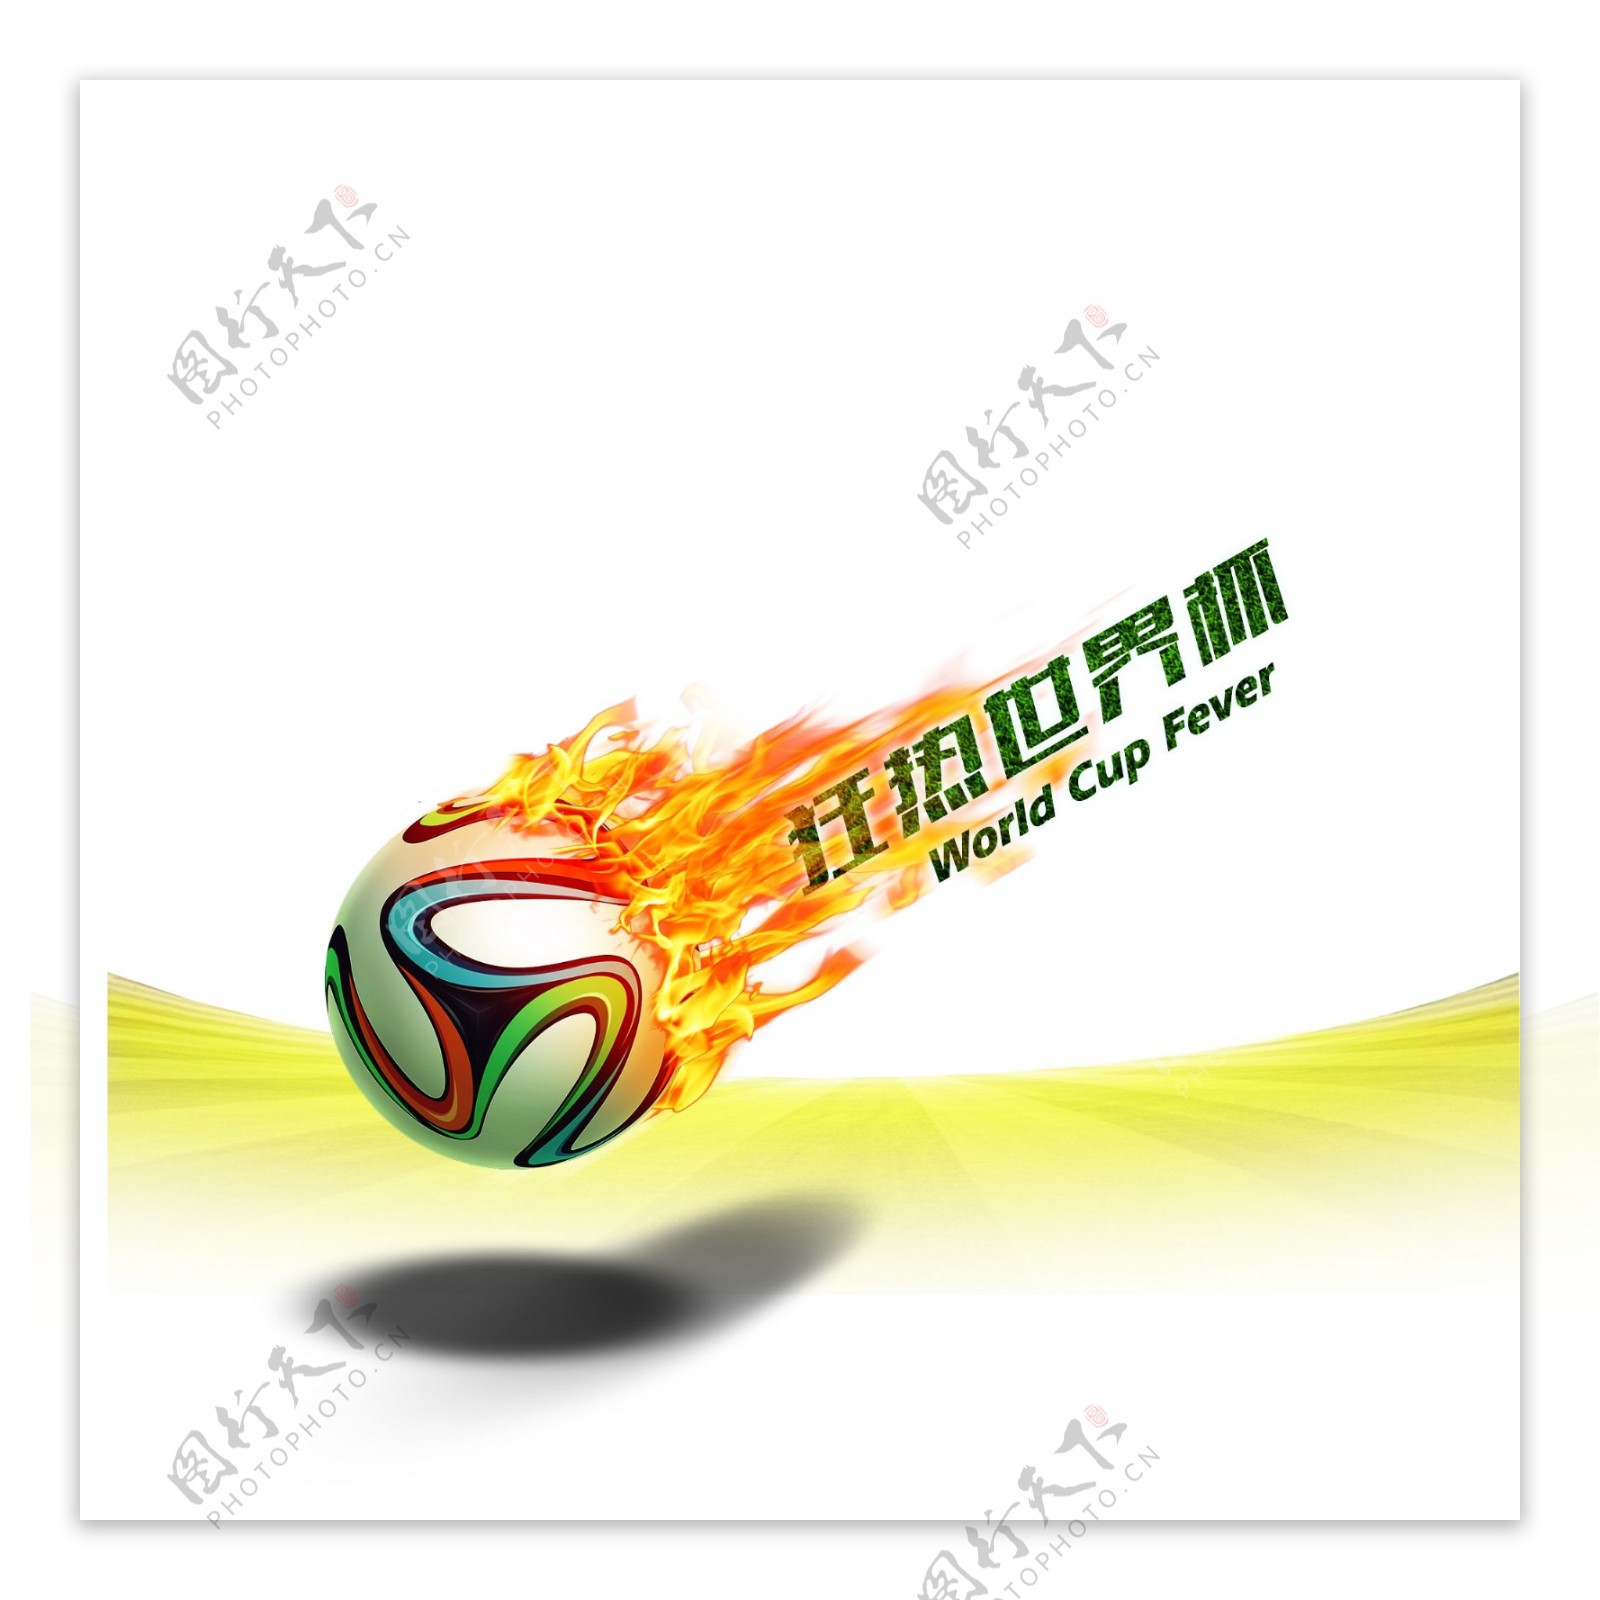 火焰足球世界杯元素